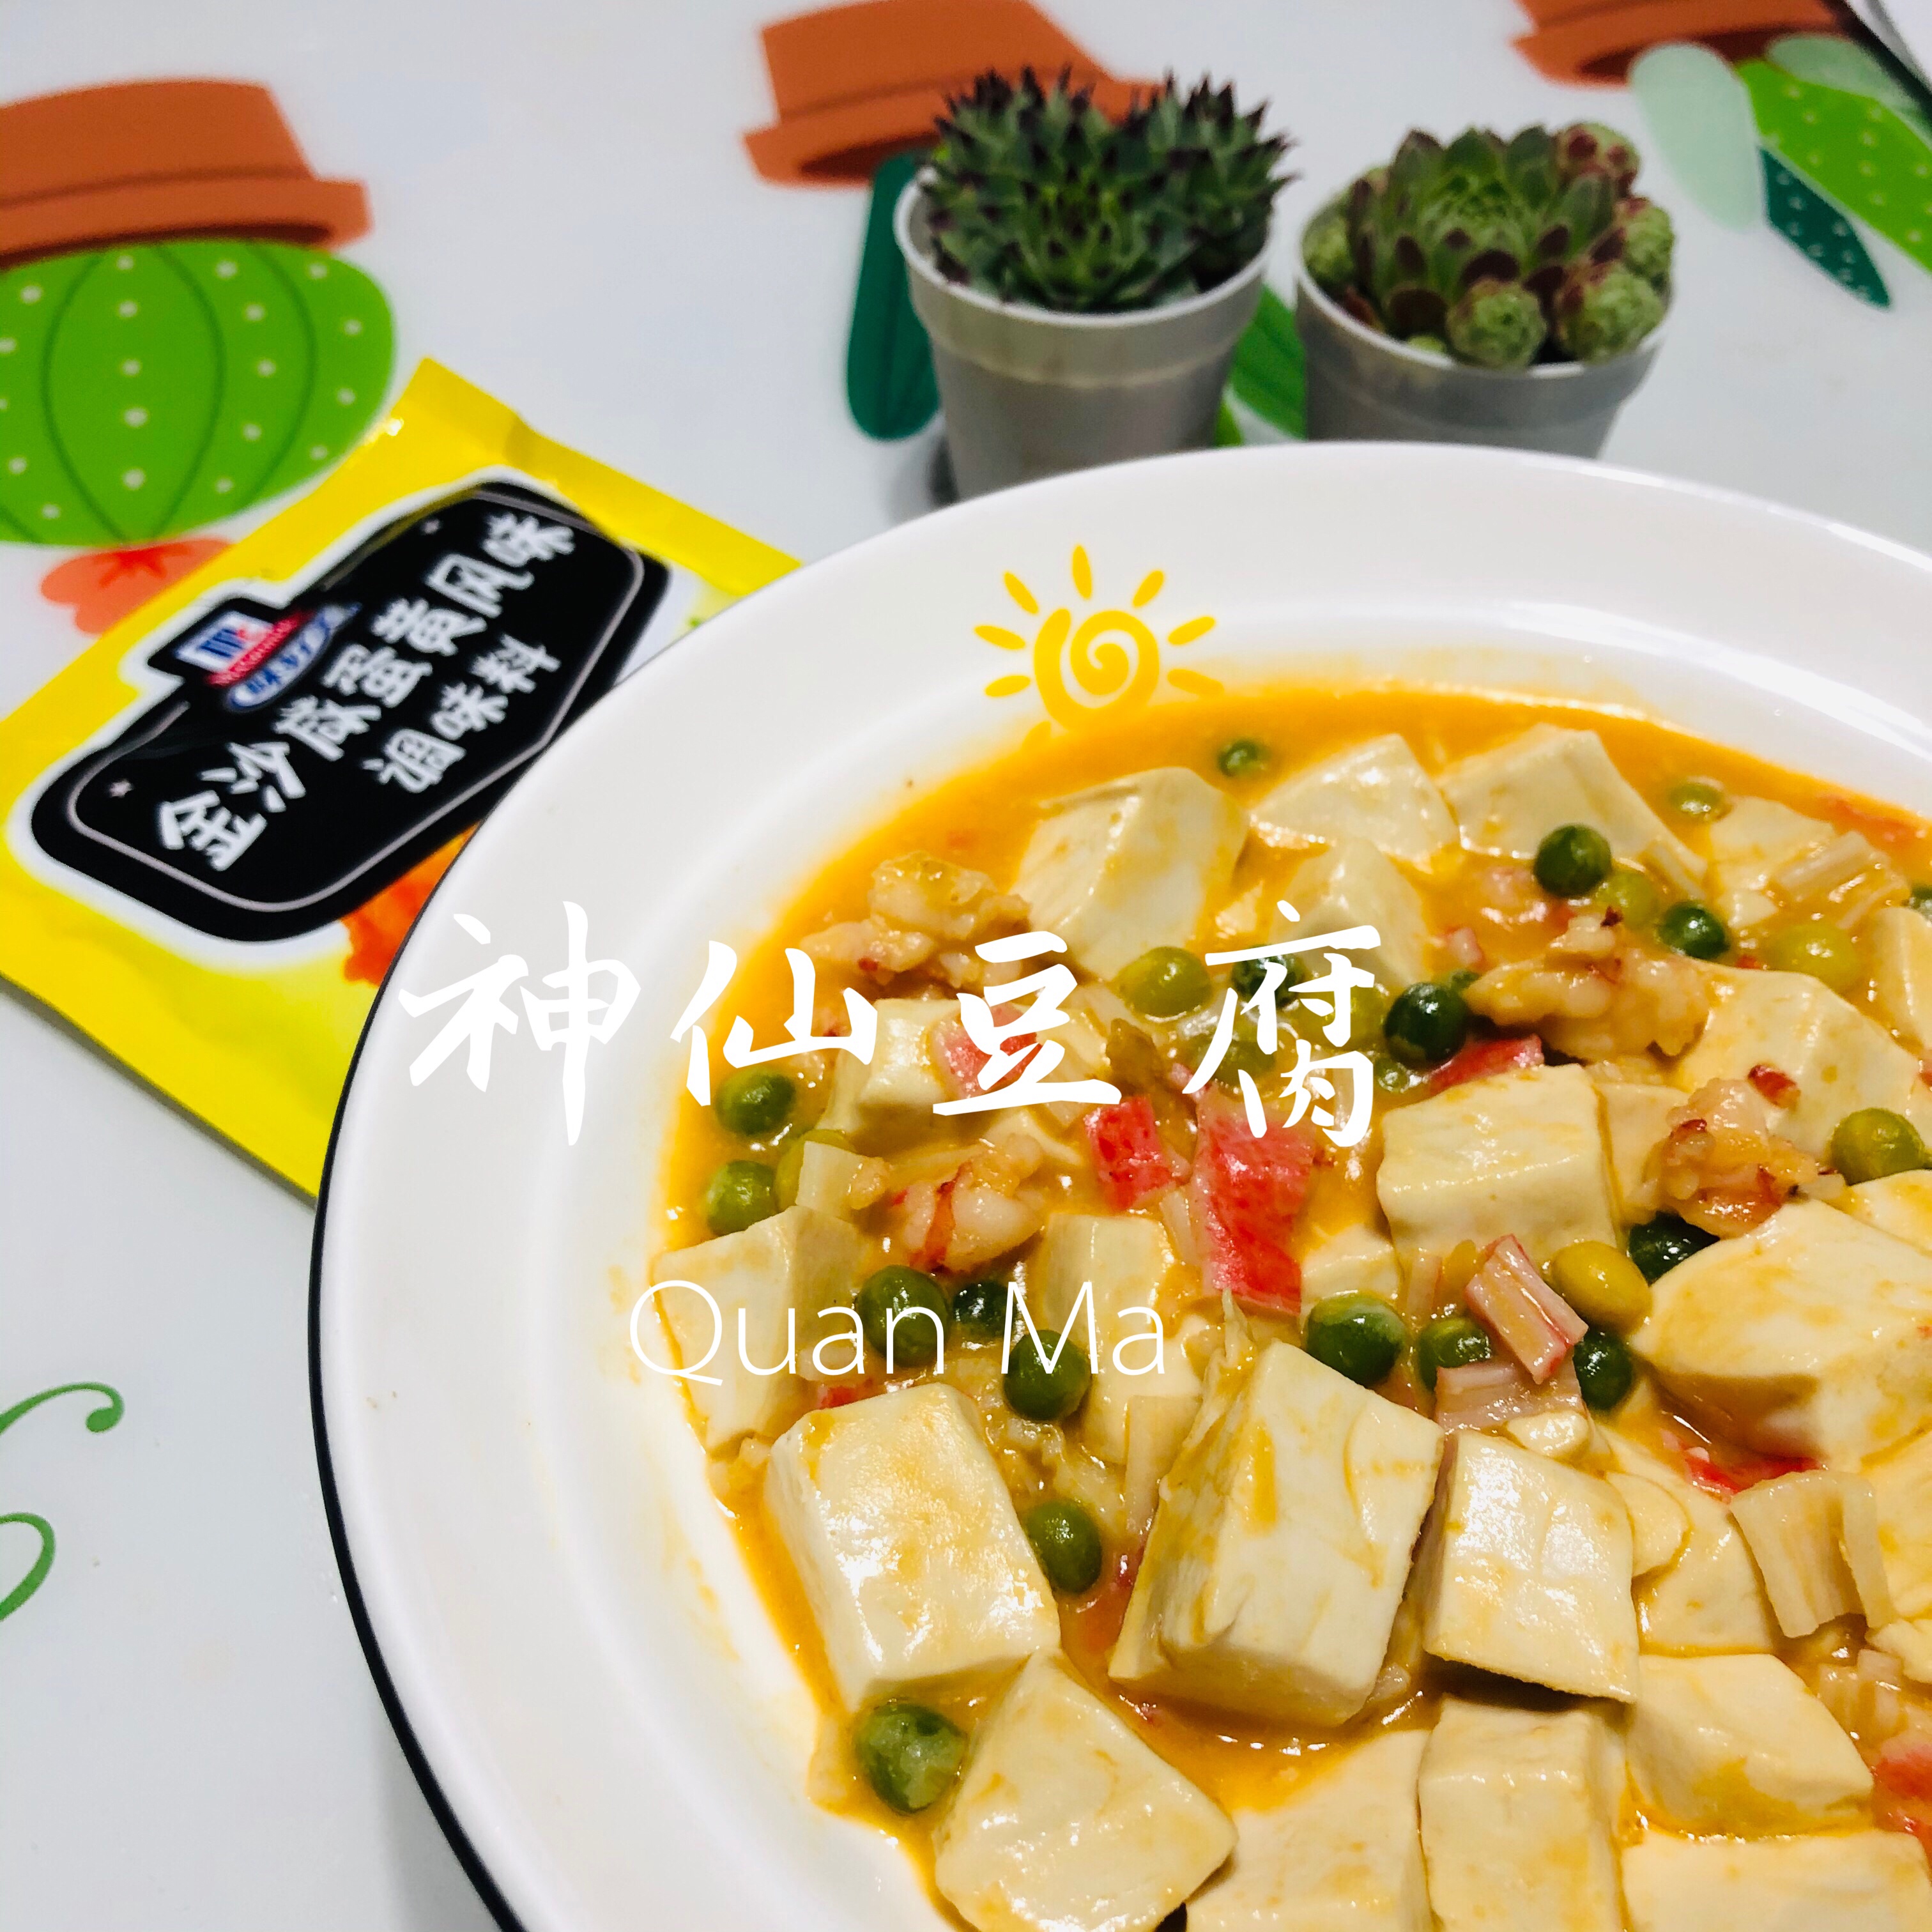 咸蛋黄风味系列之二 金沙神仙豆腐的做法步骤图 圈妈食光记 下厨房